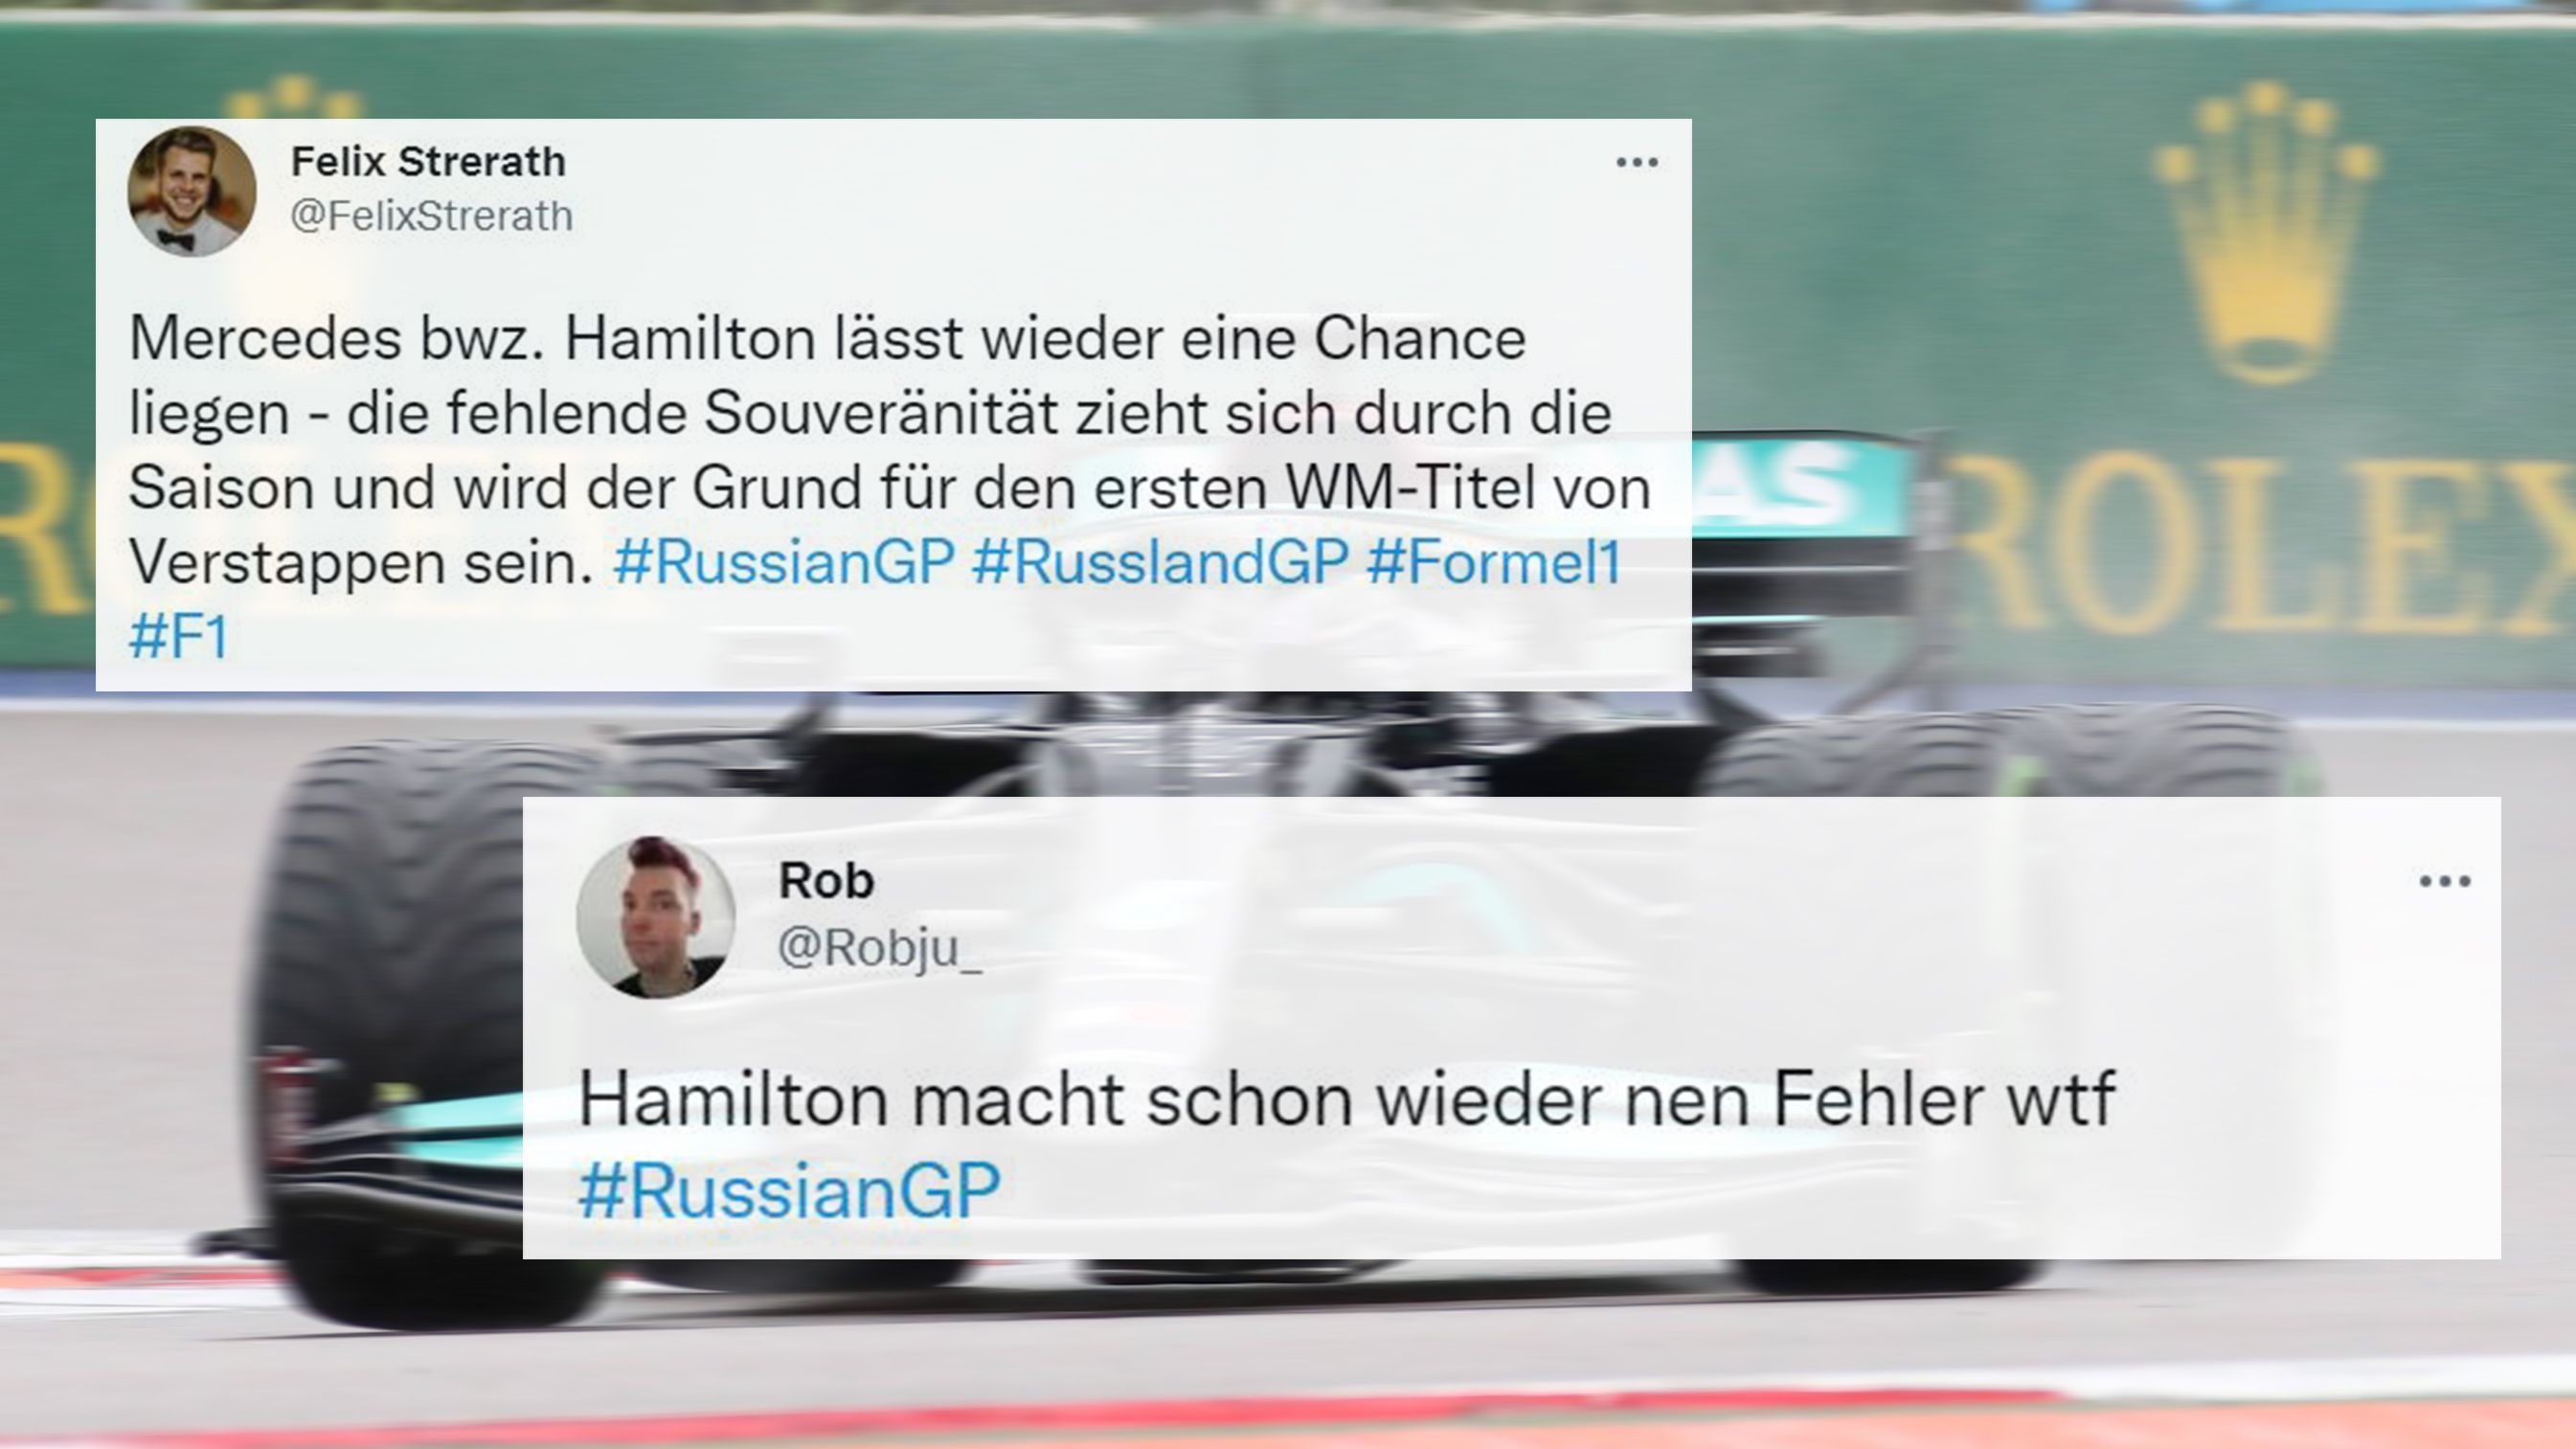 
                <strong>Hamilton ist nervös</strong><br>
                Zeigt der Weltmeister plötzlich nerven? So scheint es zumindest. In Q3 schlägt der Brite gleich zweimal leicht ein und nimmt sich so jede Chance auf eine gute Platzierung. Hamilton wird am Ende nur Vierter. 
              